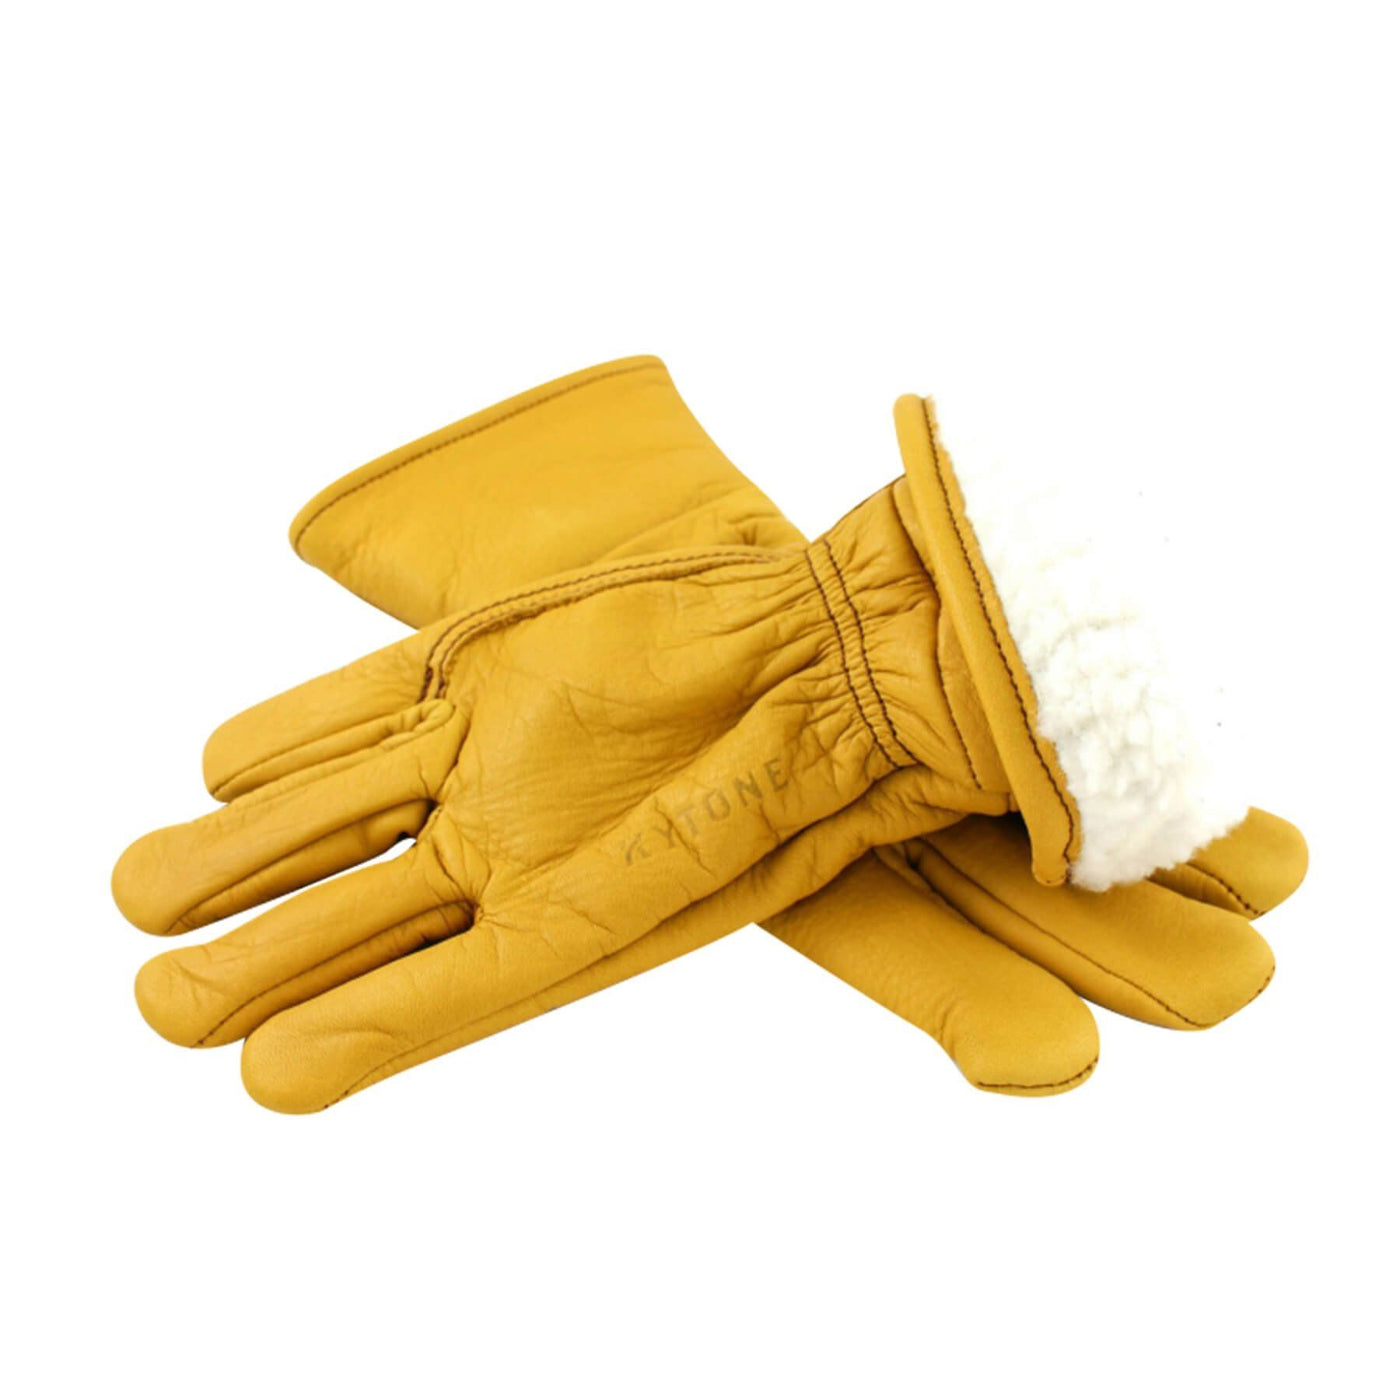 Kytone Leder-Handschuhe gefüttert gelb gold Kytone 